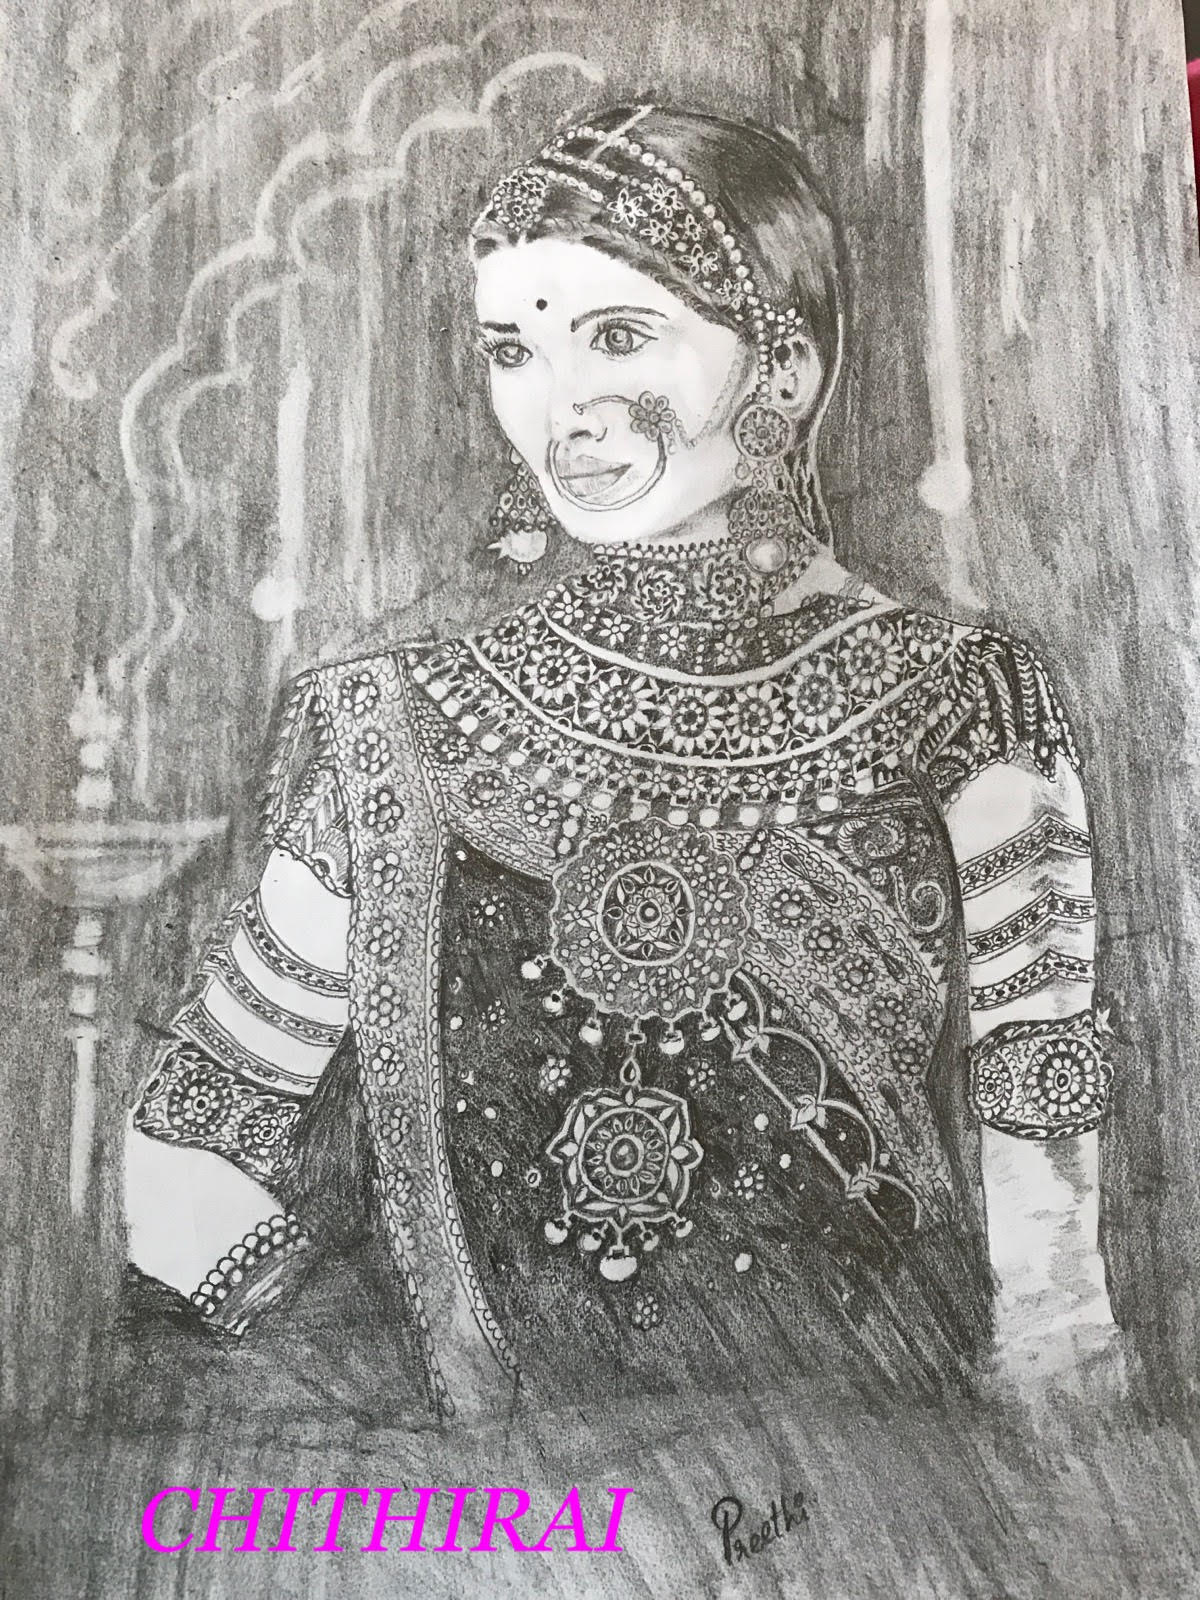 BHARATHIYAR Pencil Drawing - BALAJ ARTS | Pencil drawing images, Pencil  creative, Youtube art